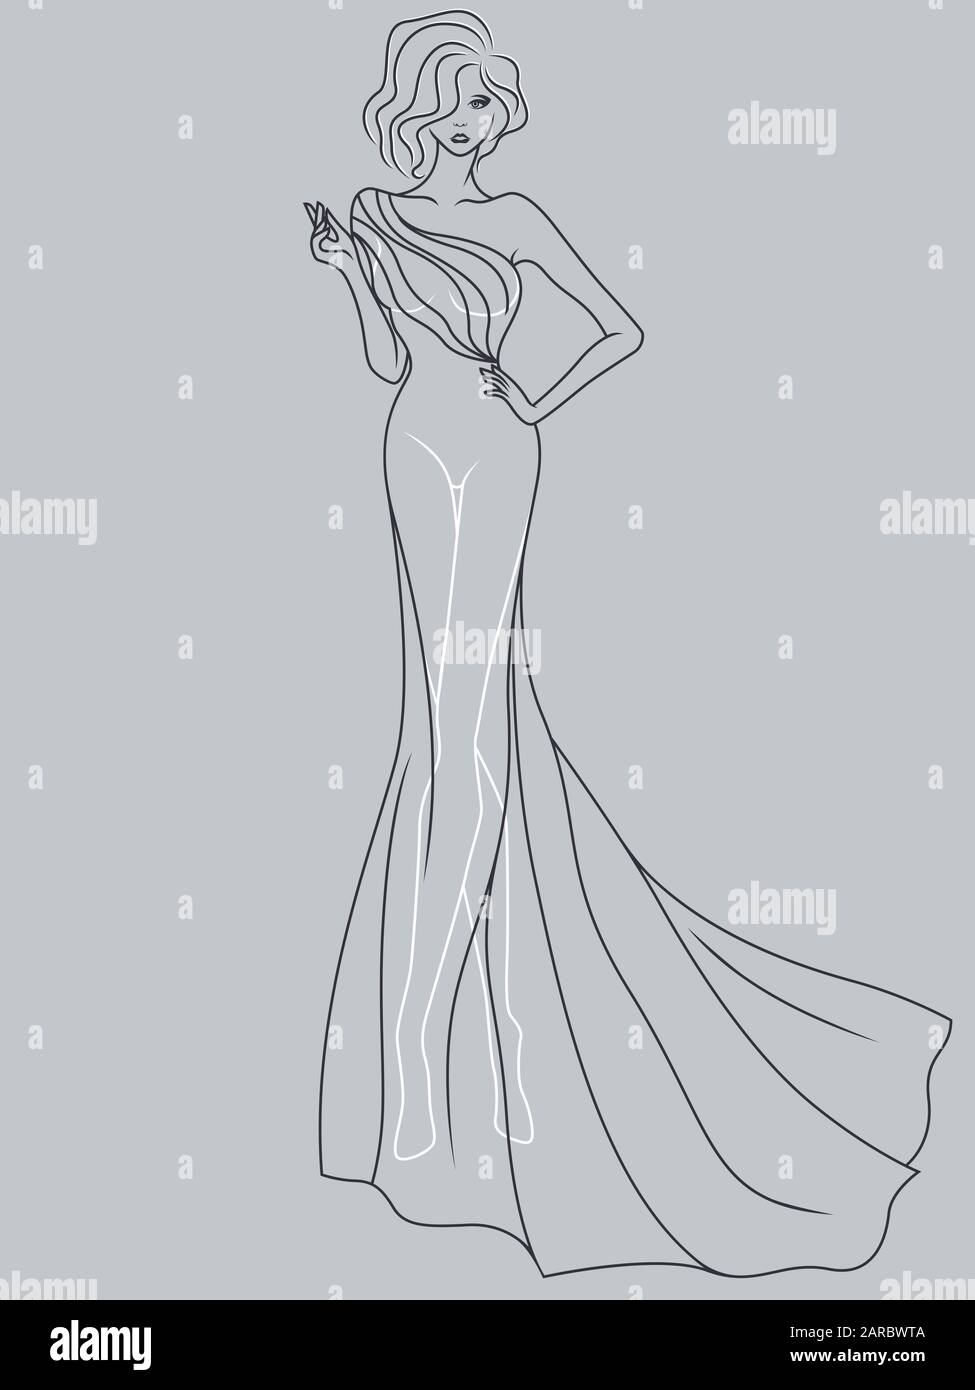 Abstrakter Umriss der charmanten und eleganten Dame in einem raffinierten Abendkleiderdesign, isoliert auf dem gedämpften blaugrauen Hintergrund Stock Vektor